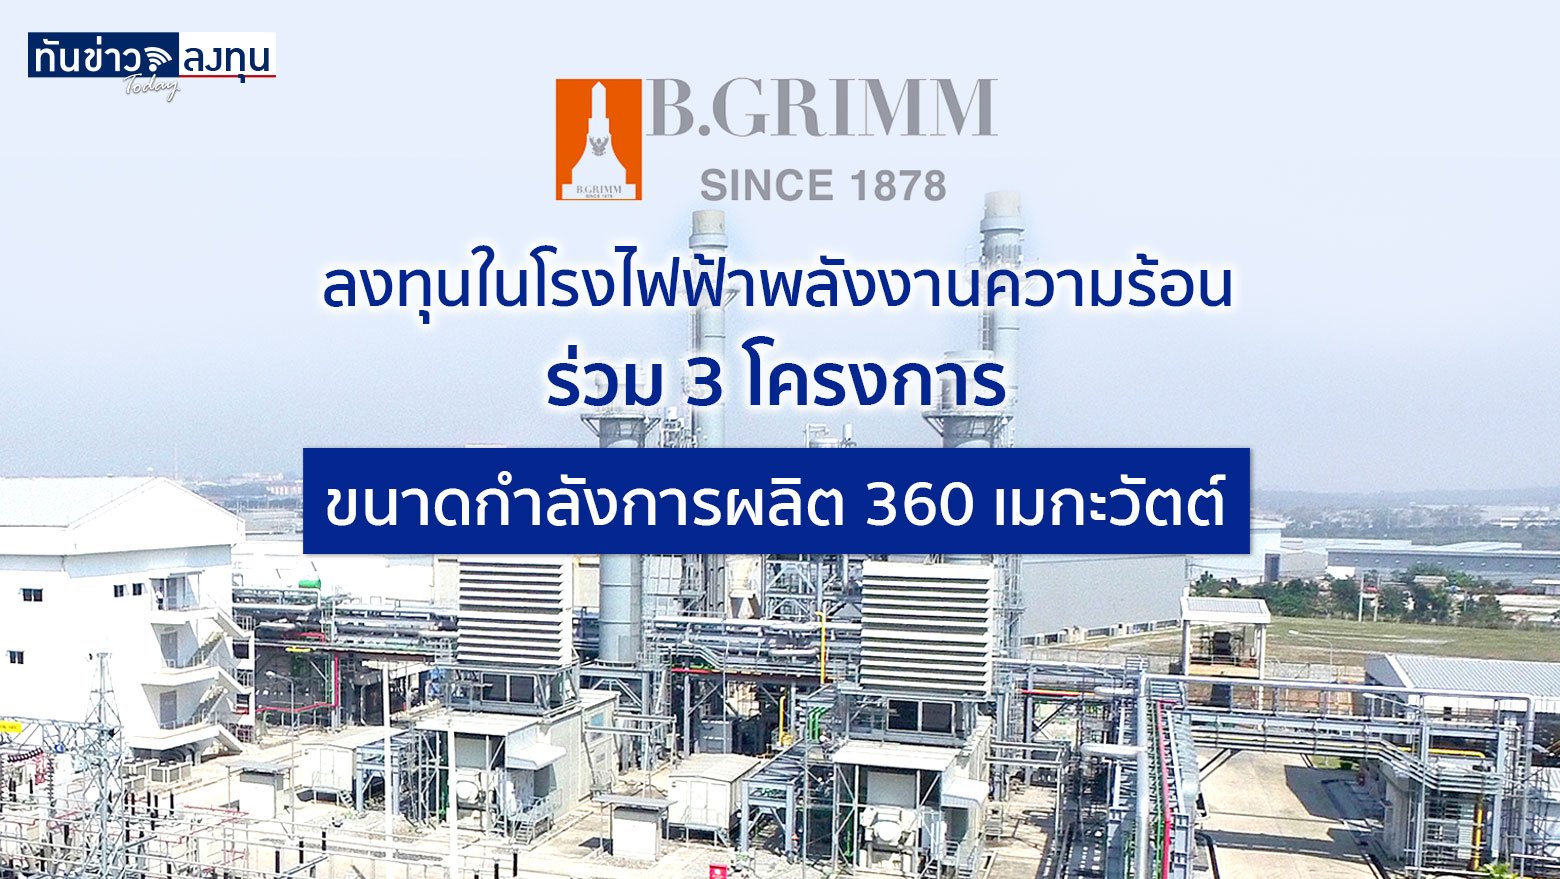 BGRIM ลงทุนในโรงไฟฟ้าพลังงานความร้อนร่วม 3 โครงการ ขนาดกำลังการผลิต 360 เมกะวัตต์